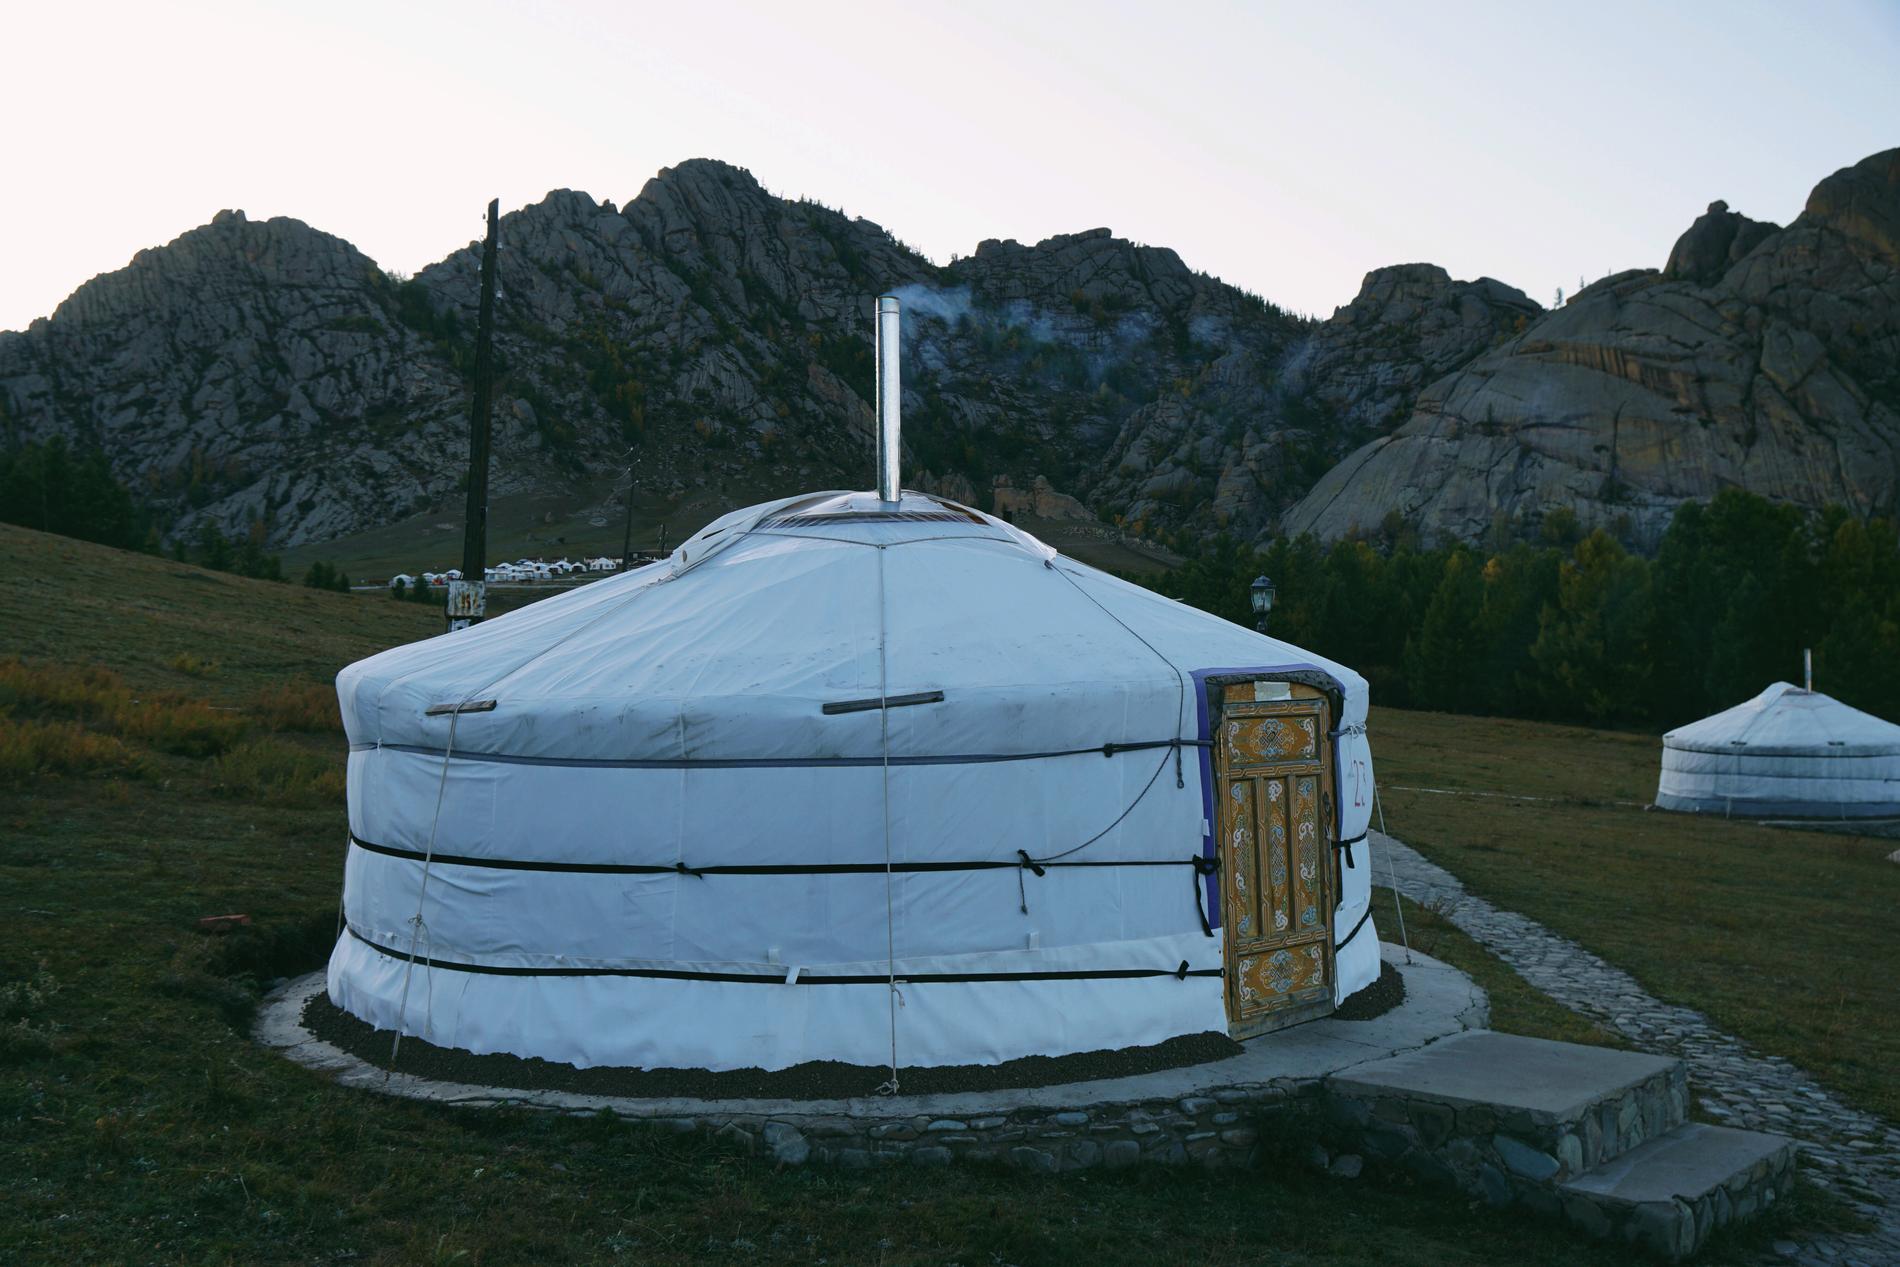  Sandy bodde i en jurta I Mongoliet, ett nomadtält som används av personer som lever med sina boskap.